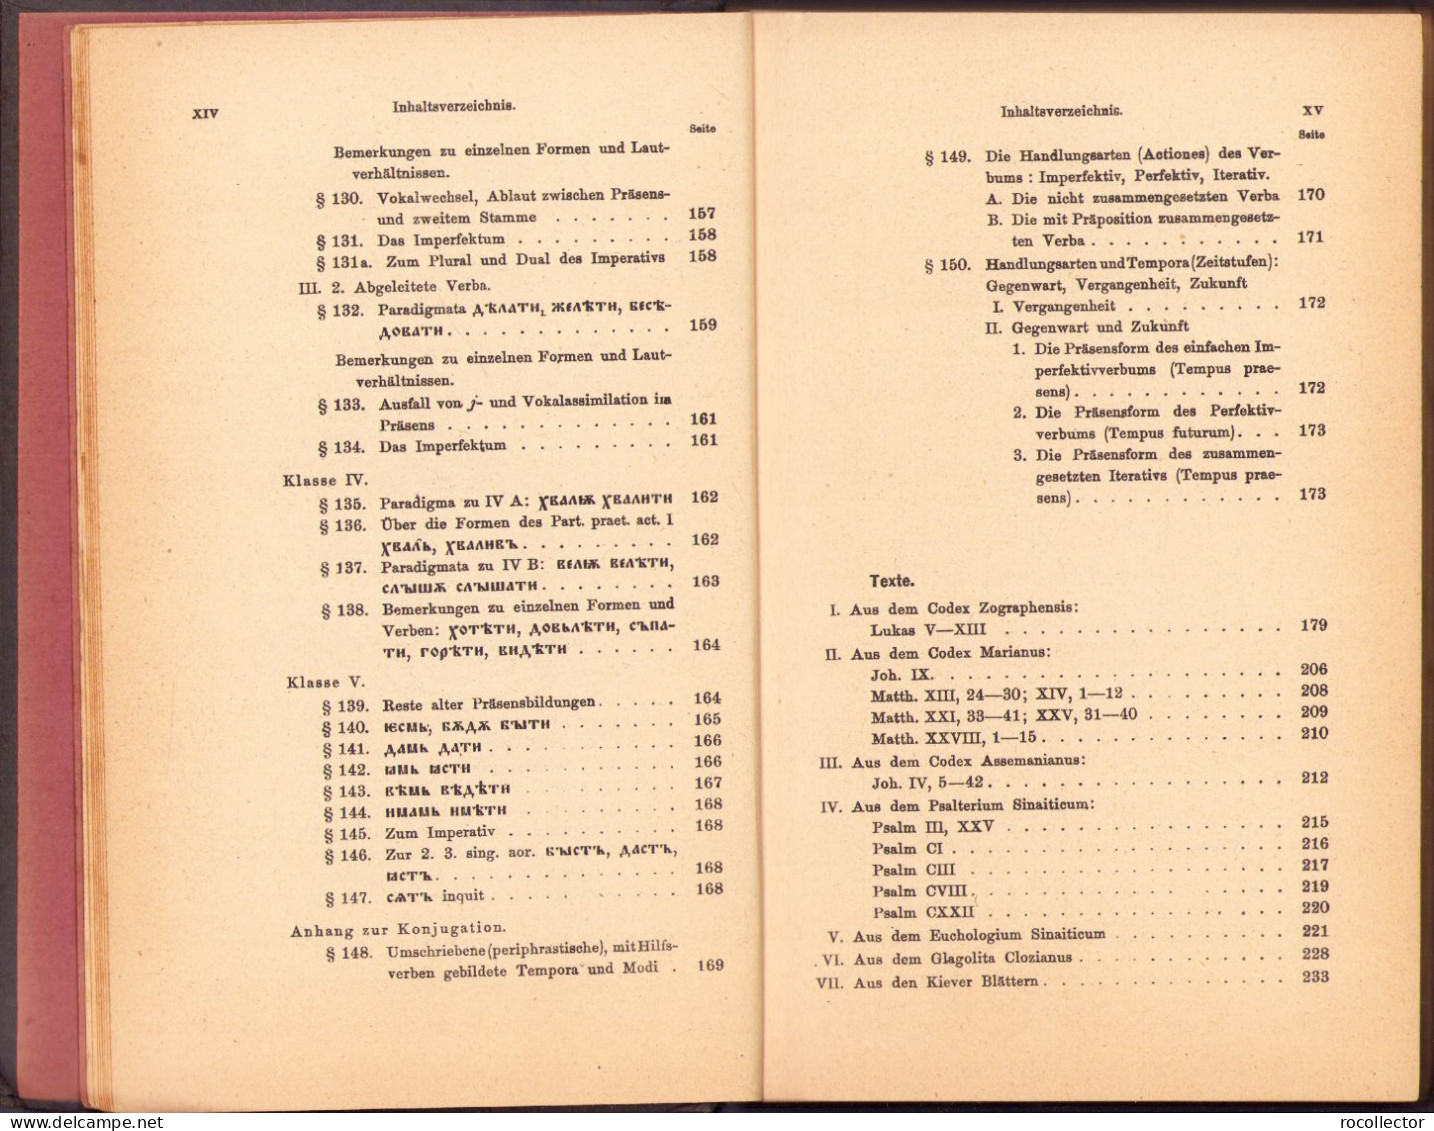 Handbuch der Altbulgarischen (Altkirchenslavischen). Grammatik. Texte. Glossar von A Leskien 1922 Heidelberg C1524